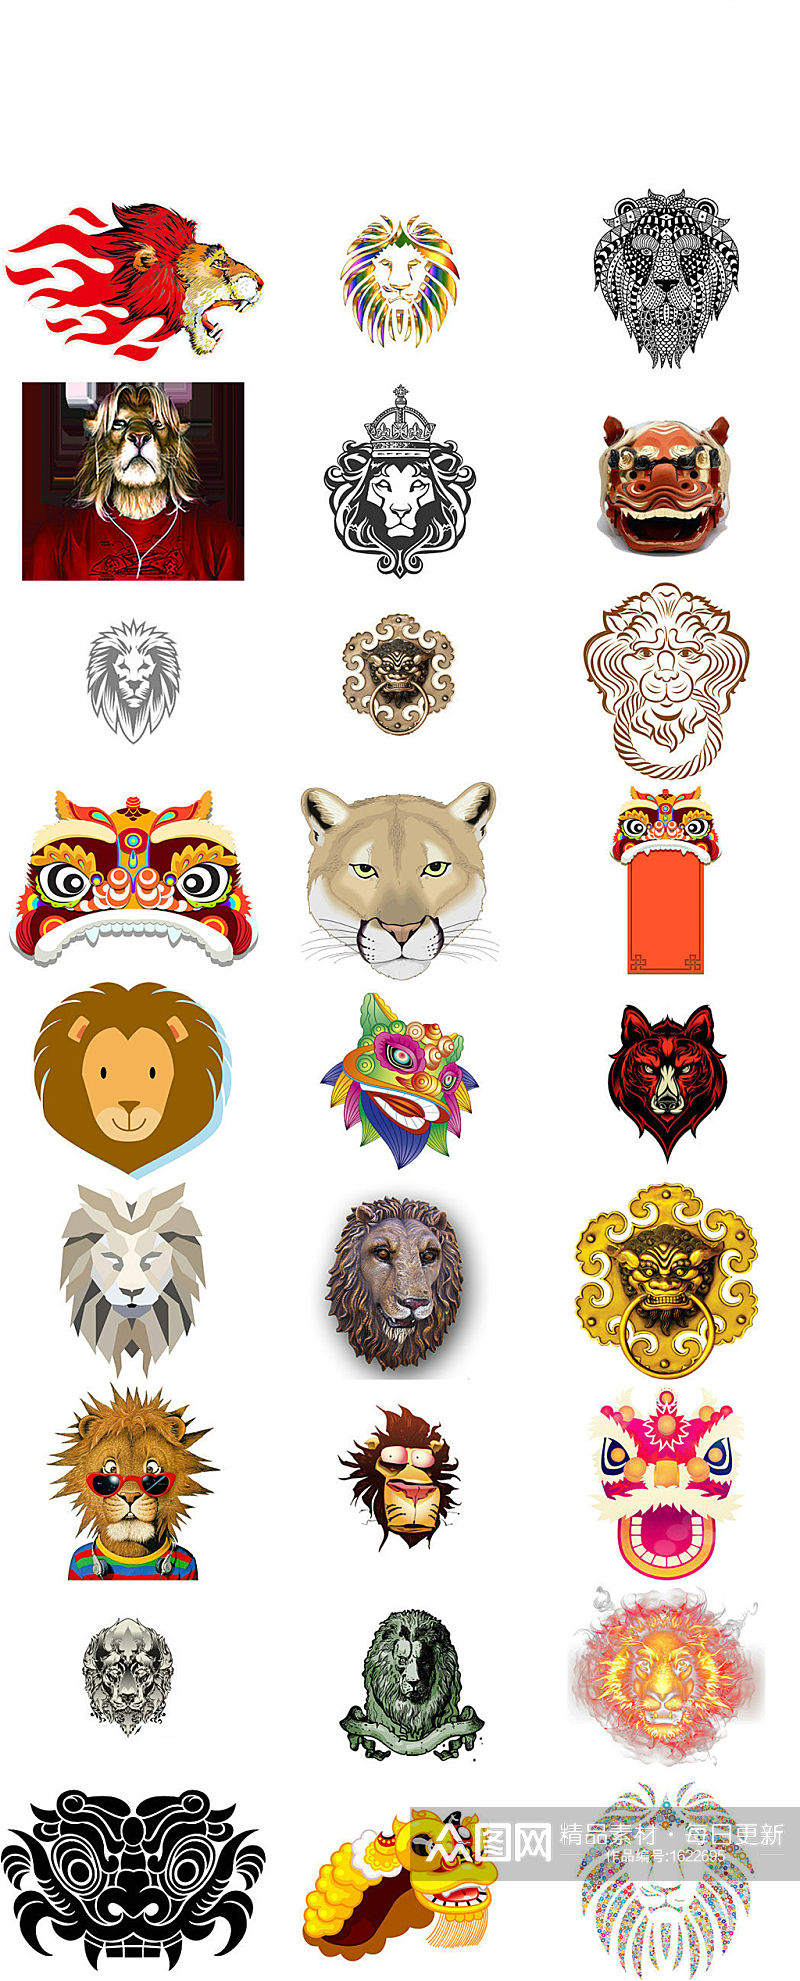 金钱豹头像 创意狮子头图案狮子头花纹卡通狮子头素材